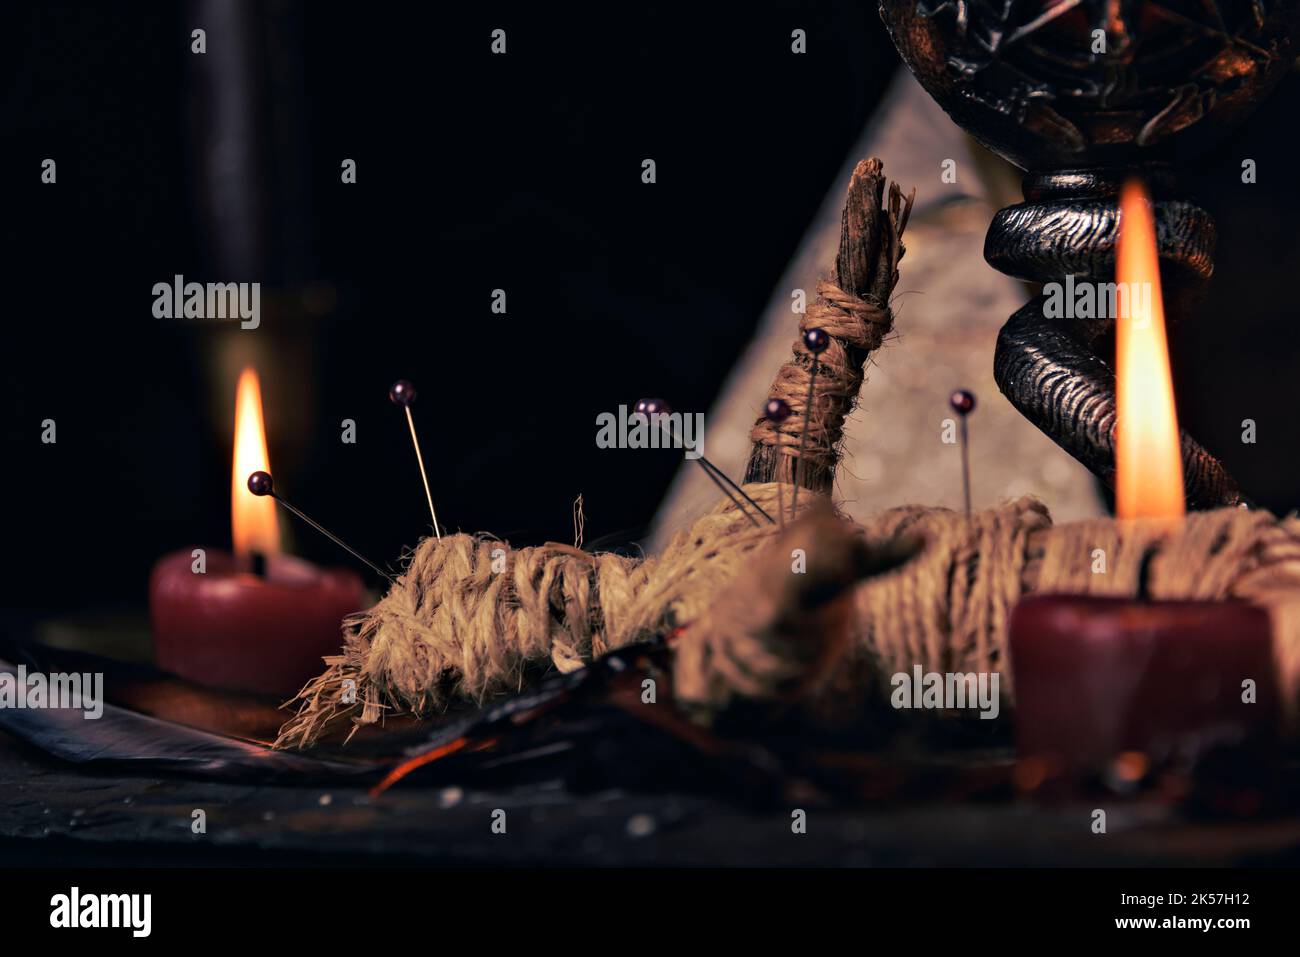 Hexerei Komposition mit brennenden Kerzen, Schmuck und Pentagramm Symbol. Halloween und okkultes Konzept, schwarzes magisches Ritual. Stockfoto